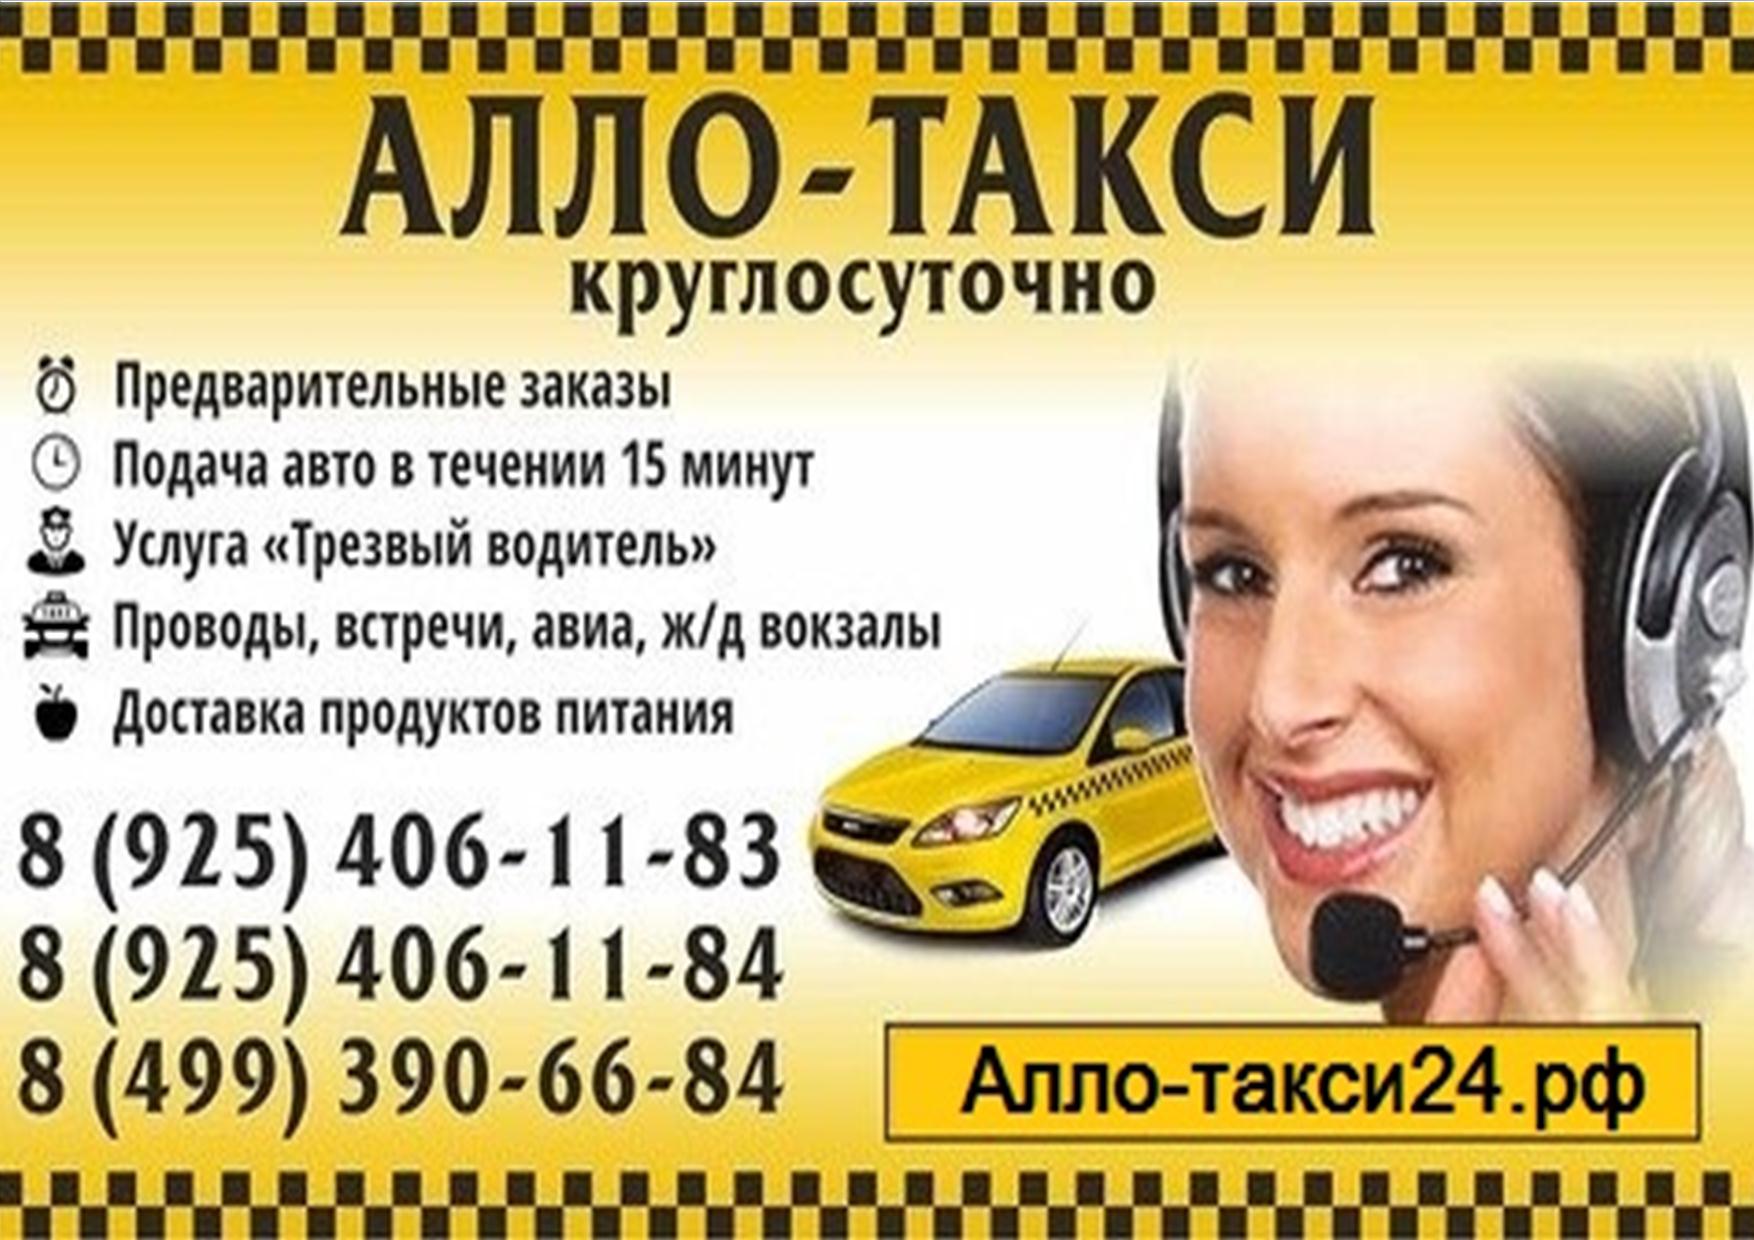 Номер такси сказать. Реклама такси. Объявление такси. Визитка такси. Таксист реклама.